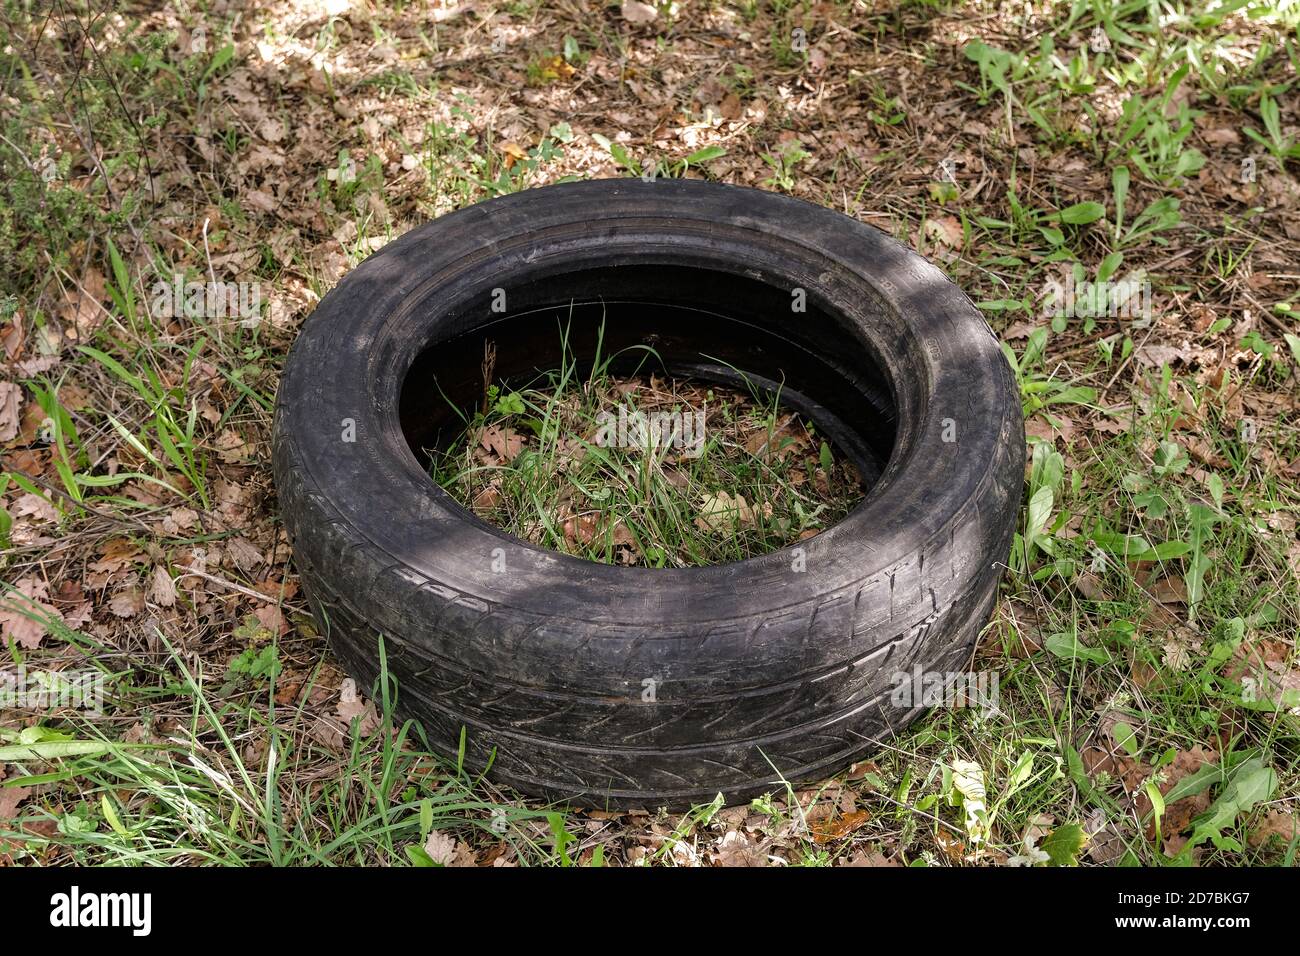 Viejo neumático de coche de caucho usado descartado en el ecosistema de bosque crudo, ambiental contaminación Foto de stock